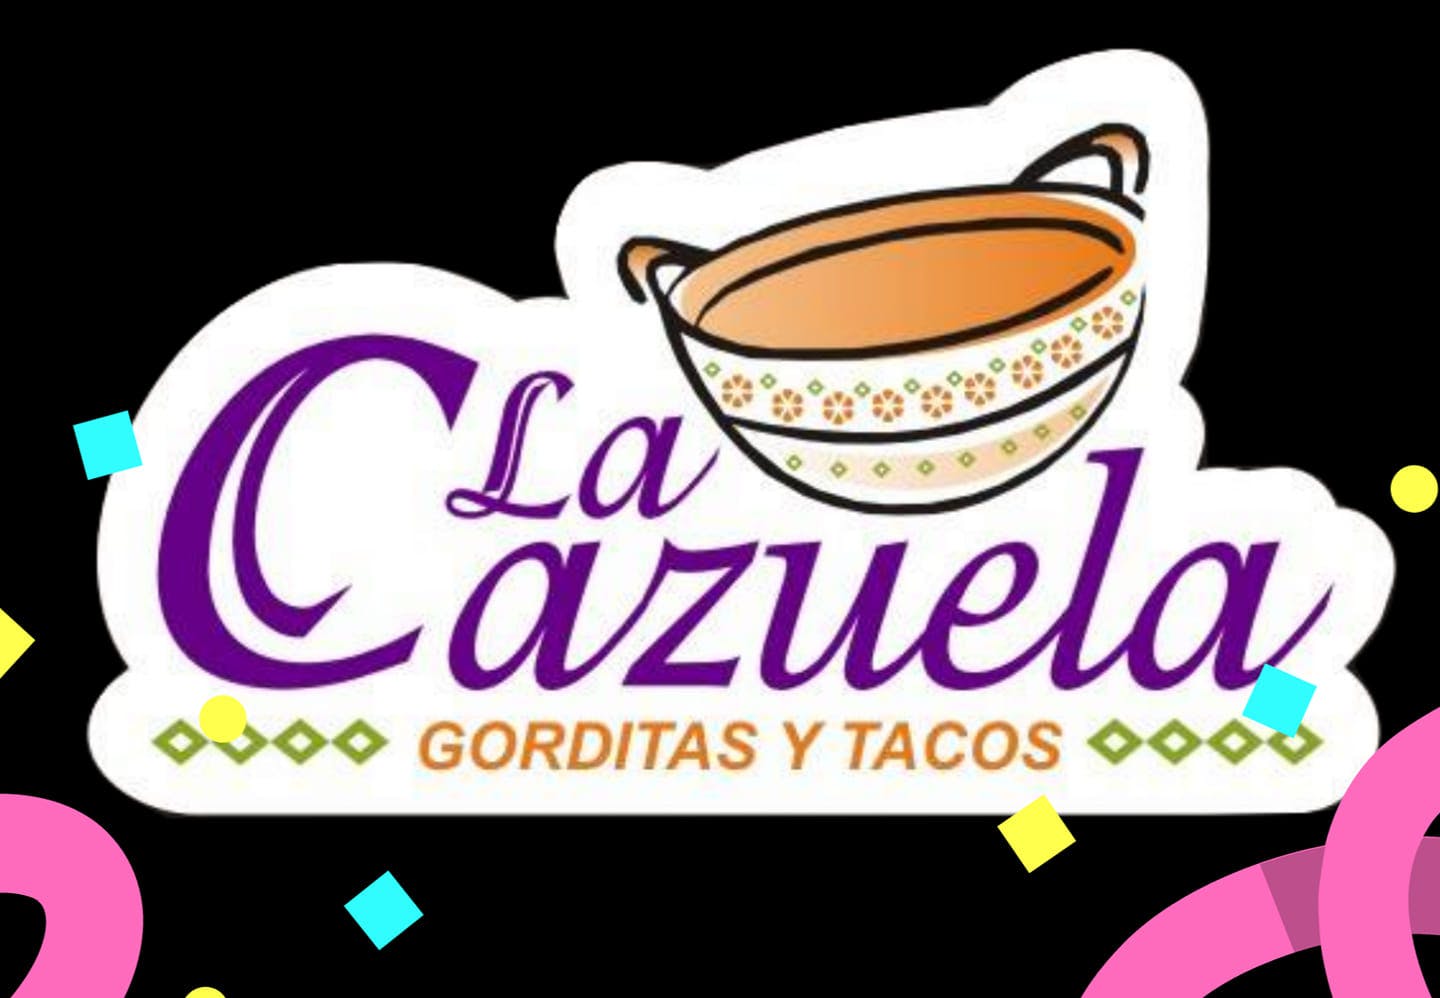 La Cazuela Gorditas y Tacos